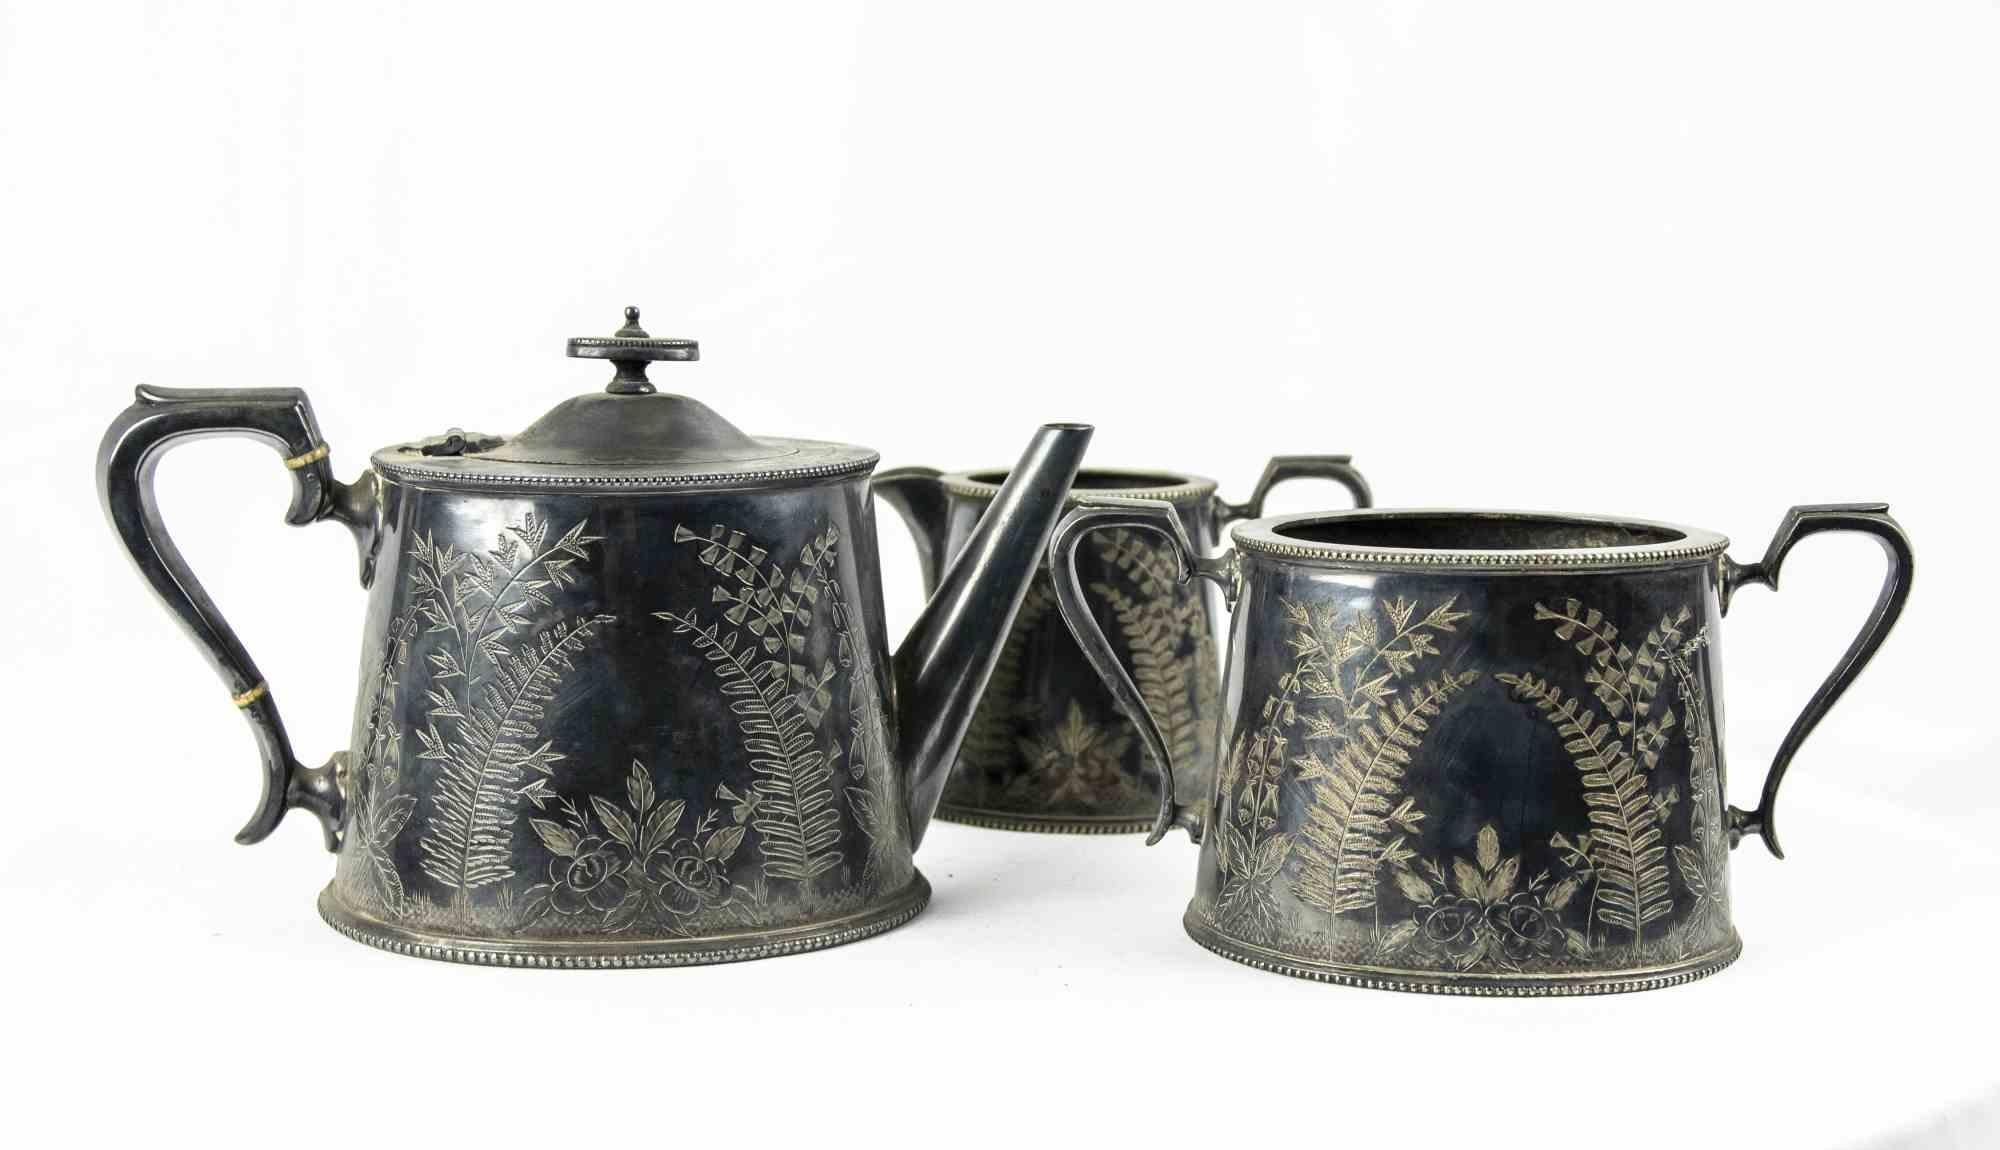 Le service à thé Sheffeld est un ensemble d'objets décoratifs originaux réalisés dans la moitié du XXe siècle.

Plaque d'argent ciselé.

L'ensemble comprend trois objets : une théière, un pot à lait et un bol. L'étiquette 